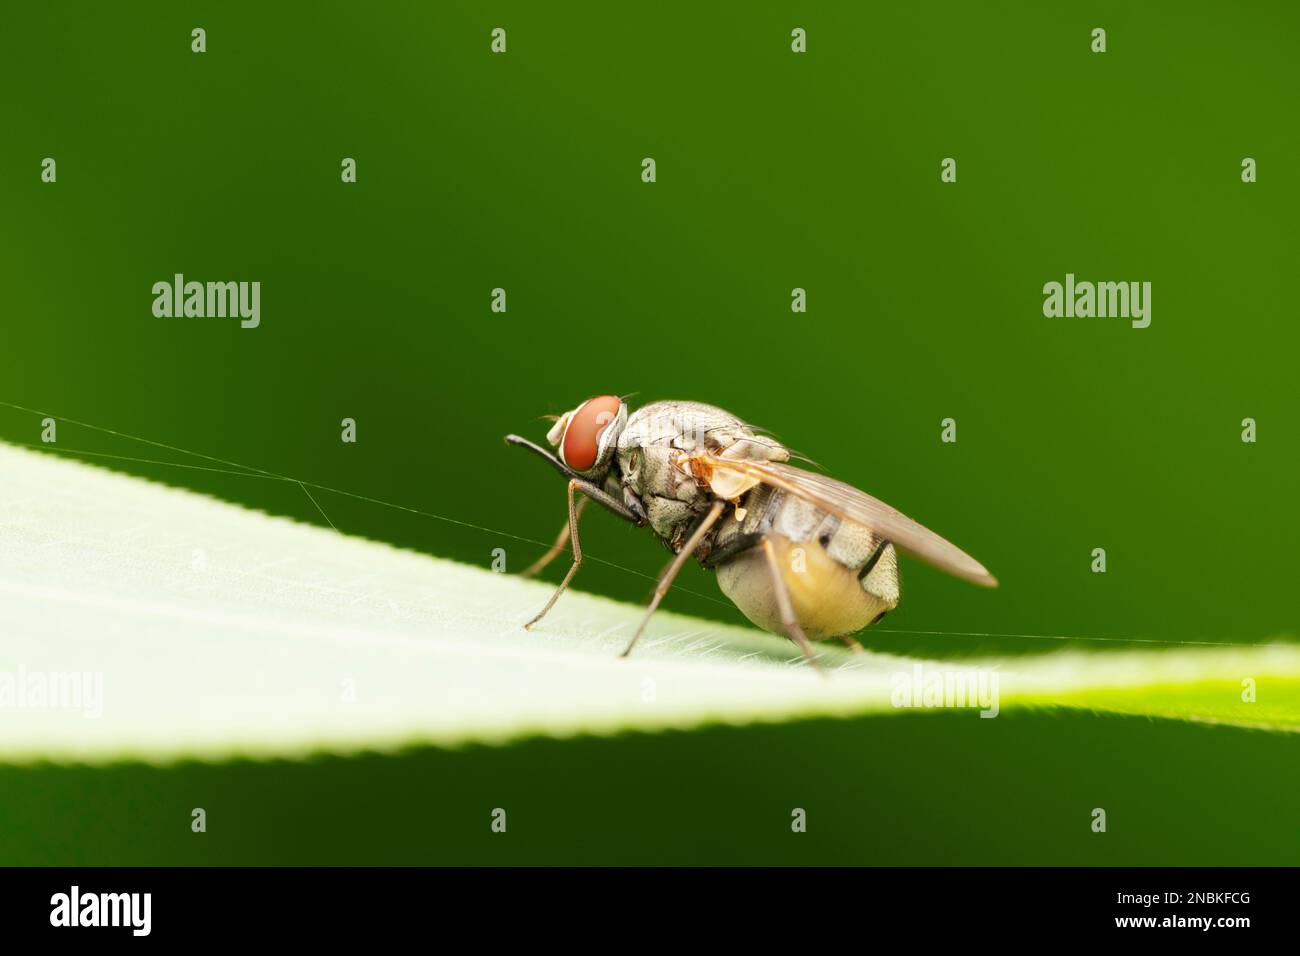 Horn fly, Haematobia irritans, Satara, Maharashtra, India Stock Photo